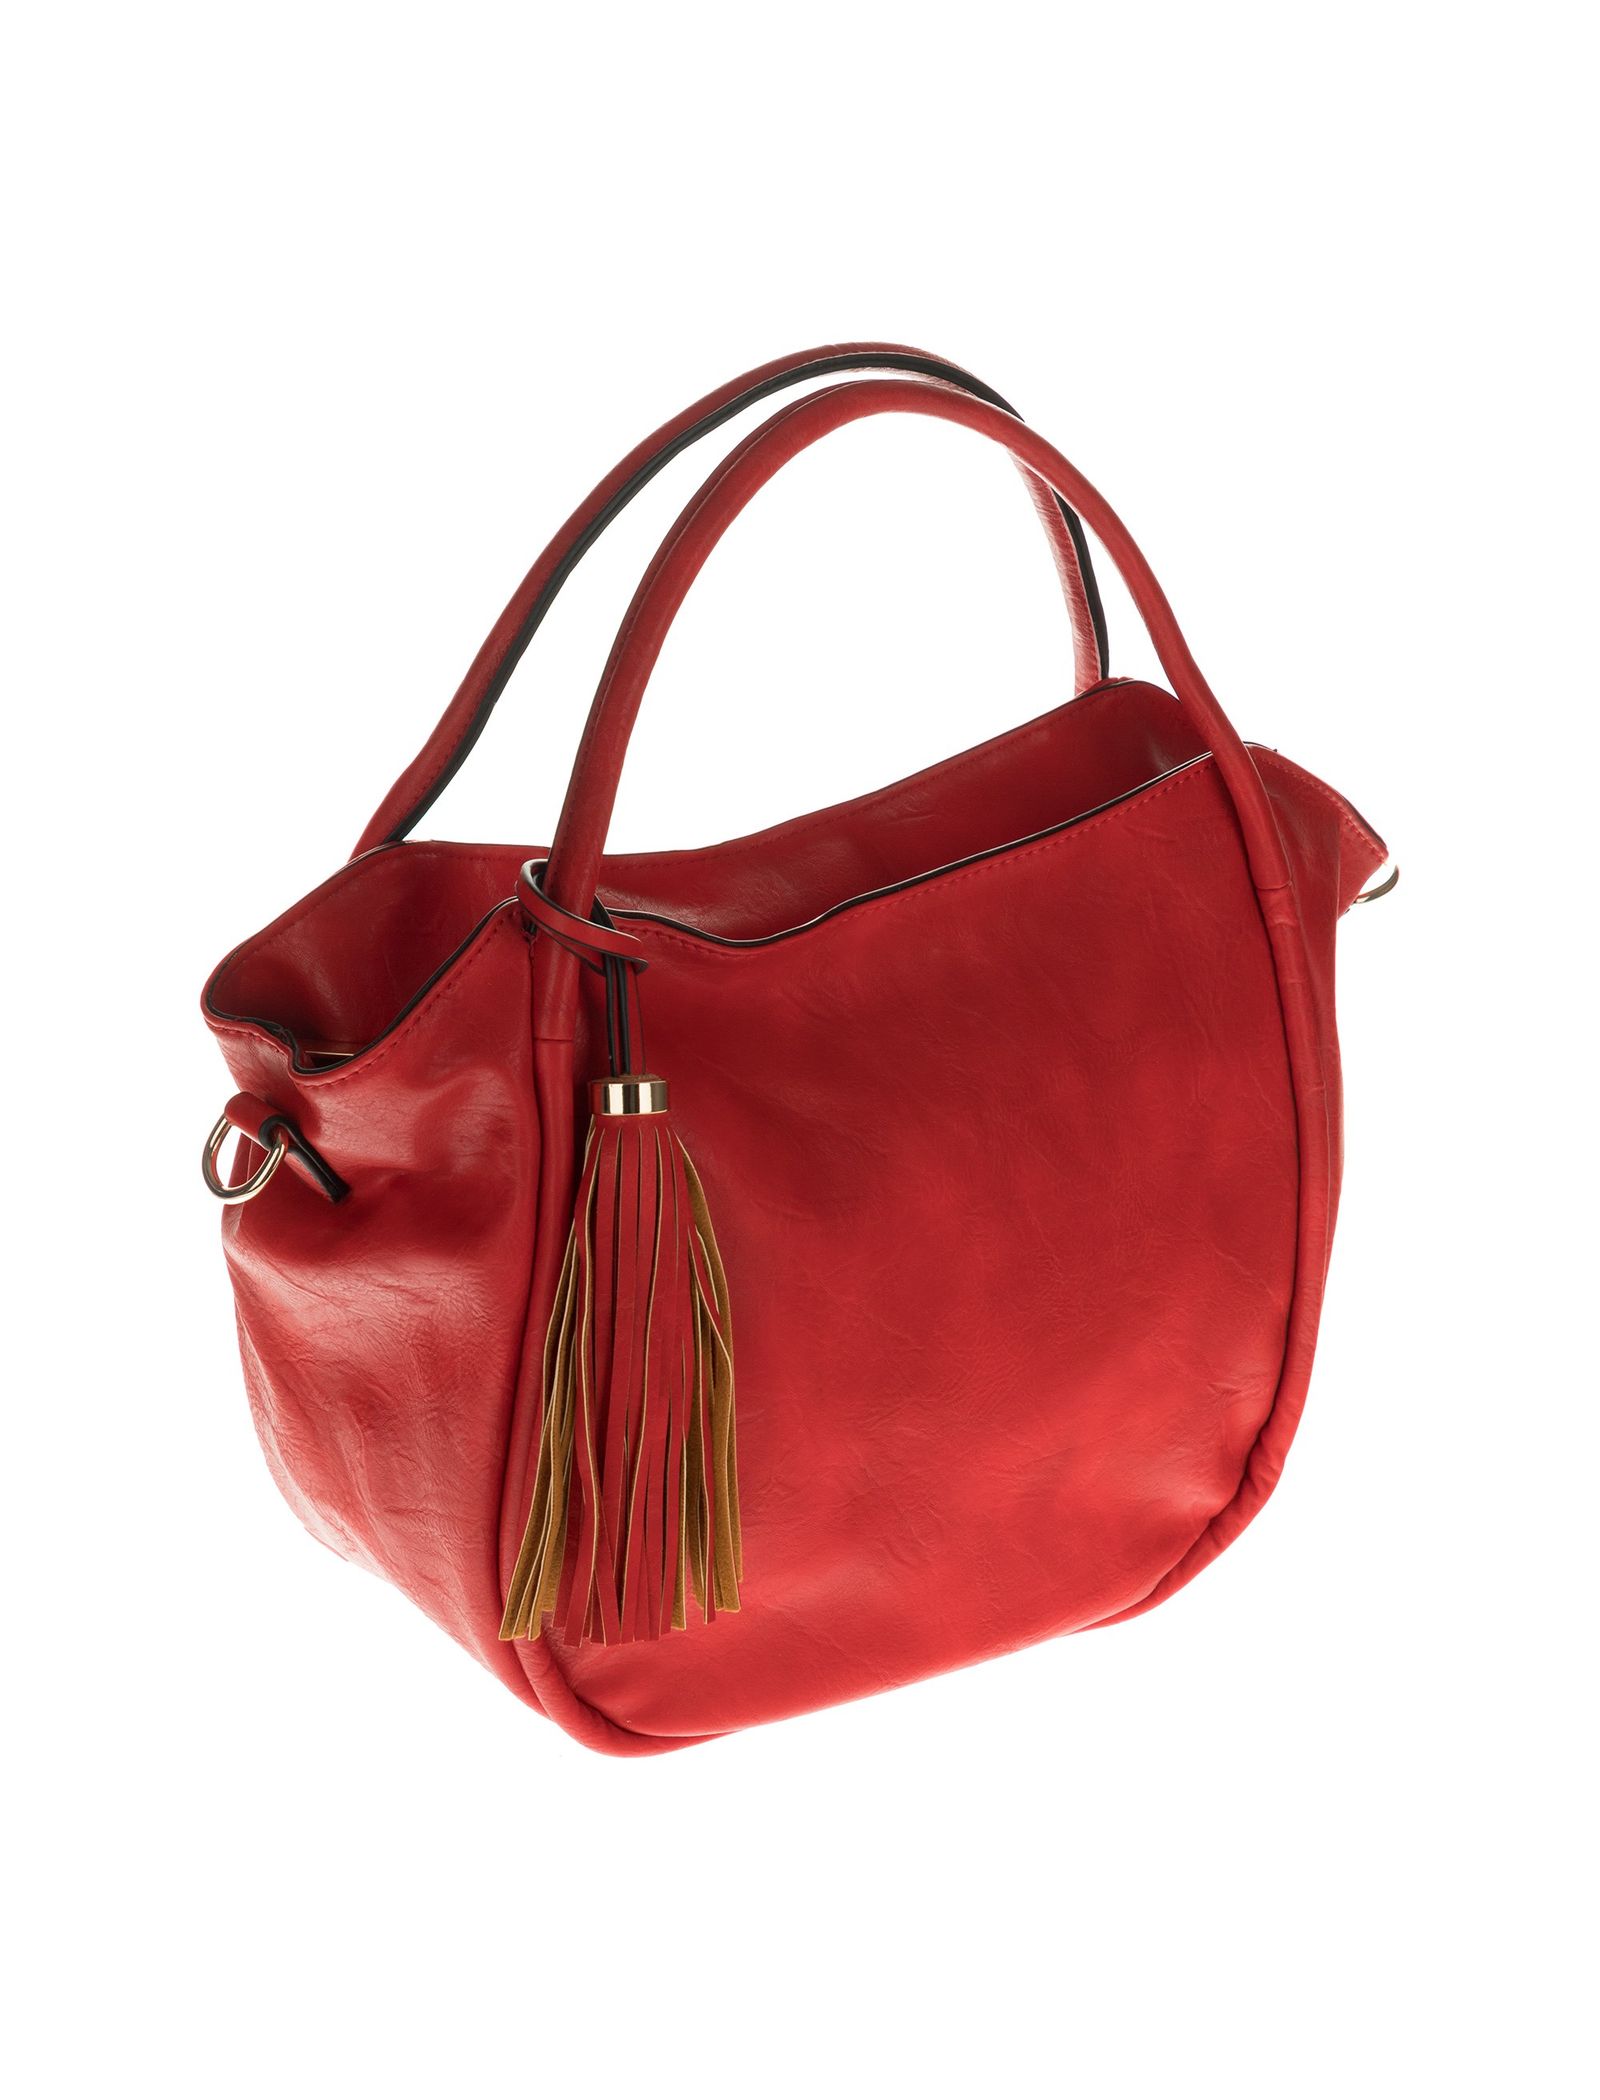 کیف دستی روزمره زنانه - دادلین تک سایز - قرمز  - 4